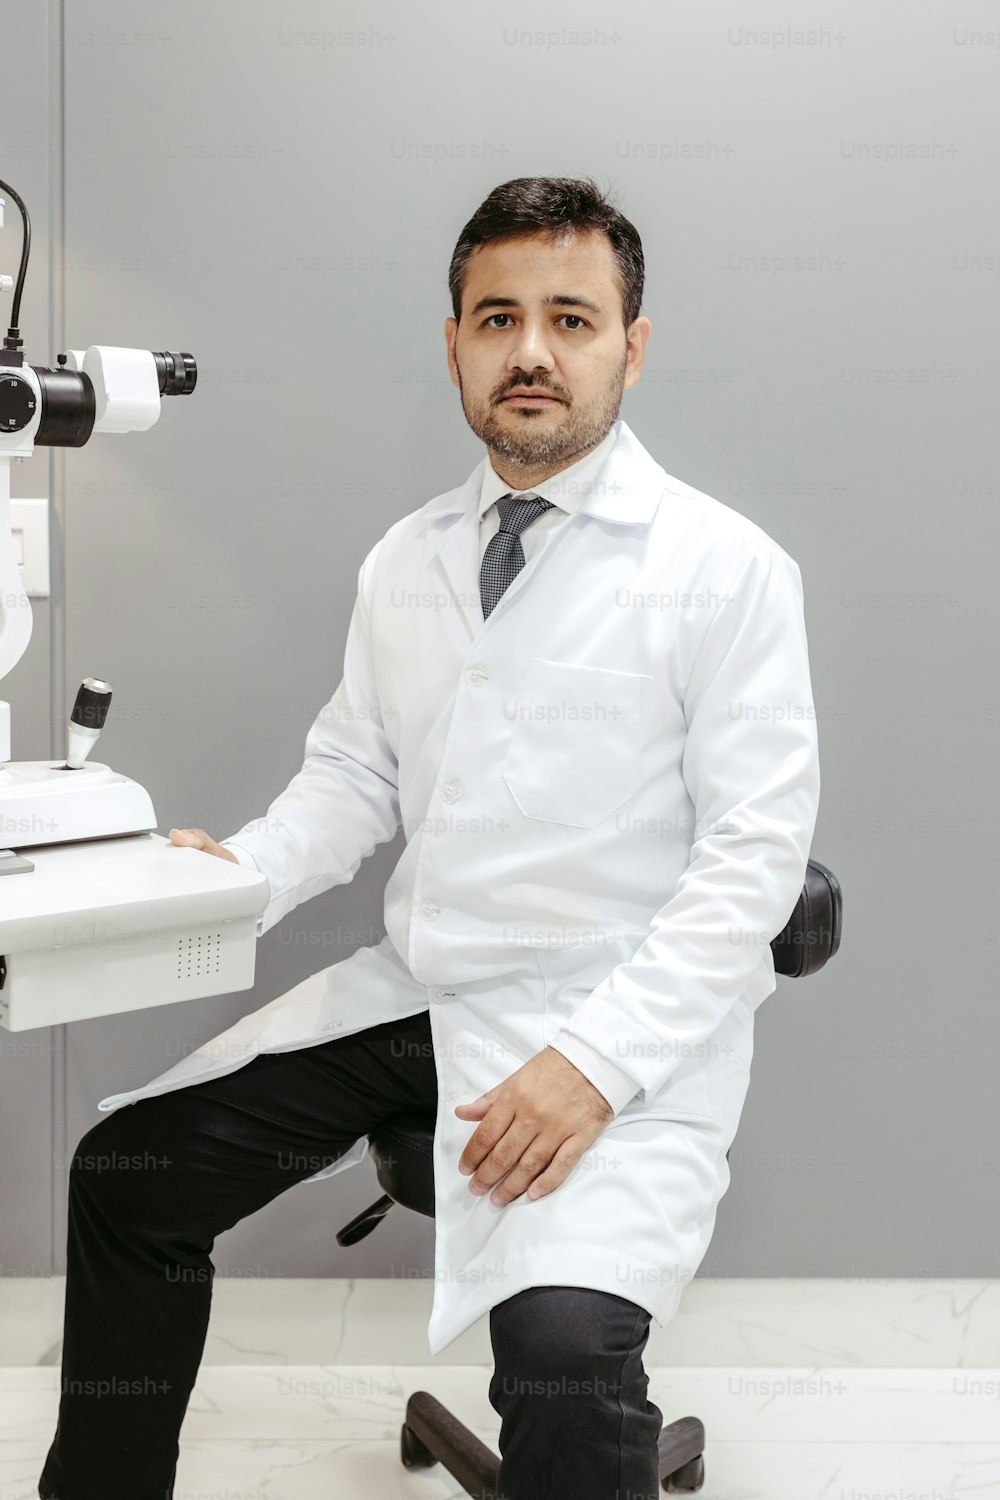 Un homme en blouse blanche assis devant un microscope